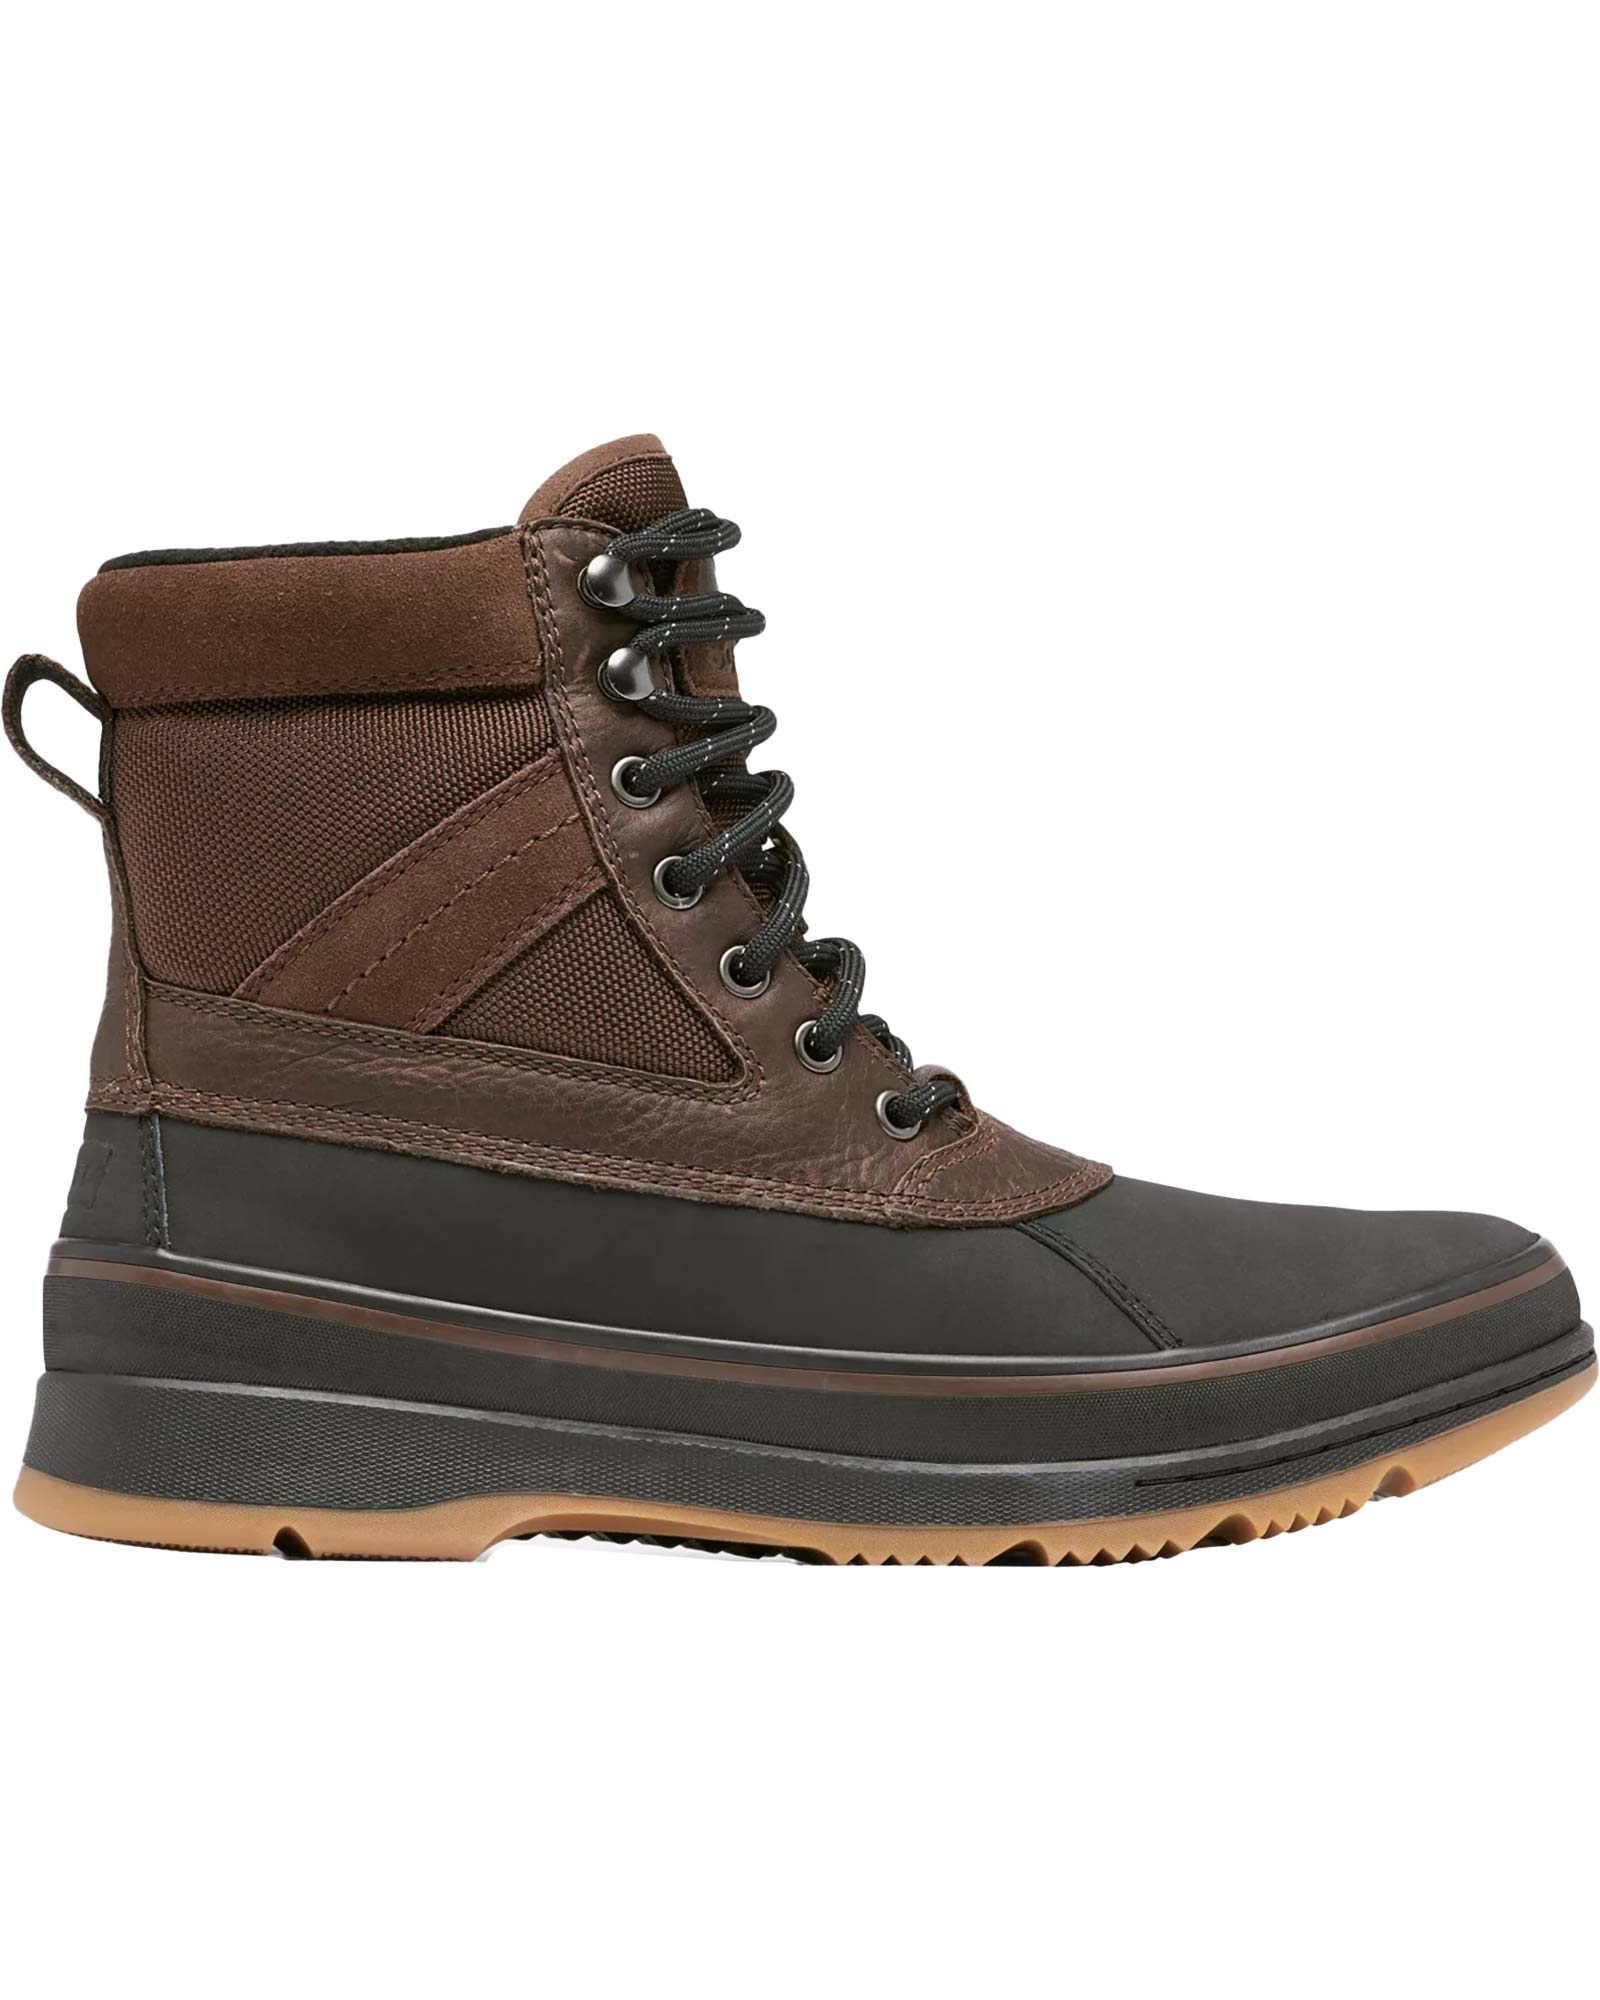 Sorel Ankeny II Waterproof Men’s Boots - Tobacco/Black UK 10